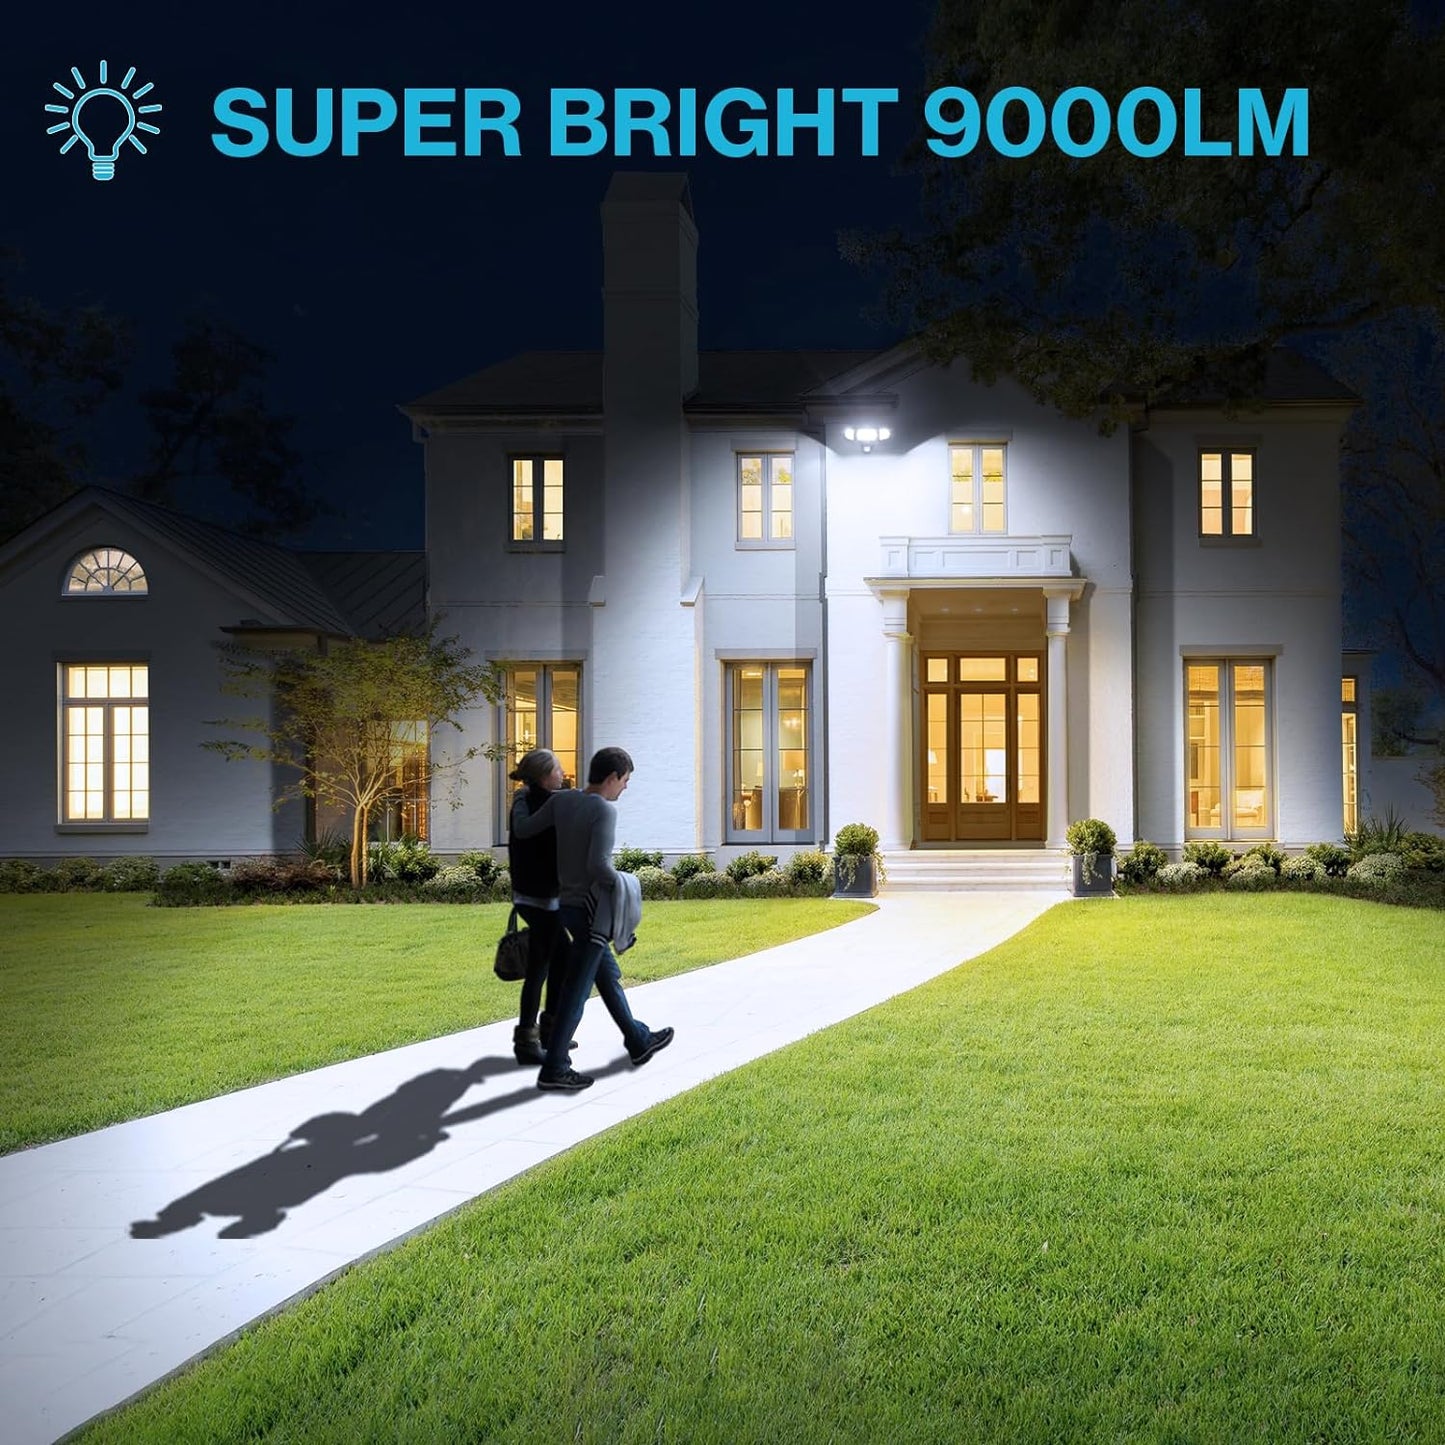 100W LED   BlackSecurity/Motion Sensor Outdoor Light, 2 Pack, 9000LM Super Bright